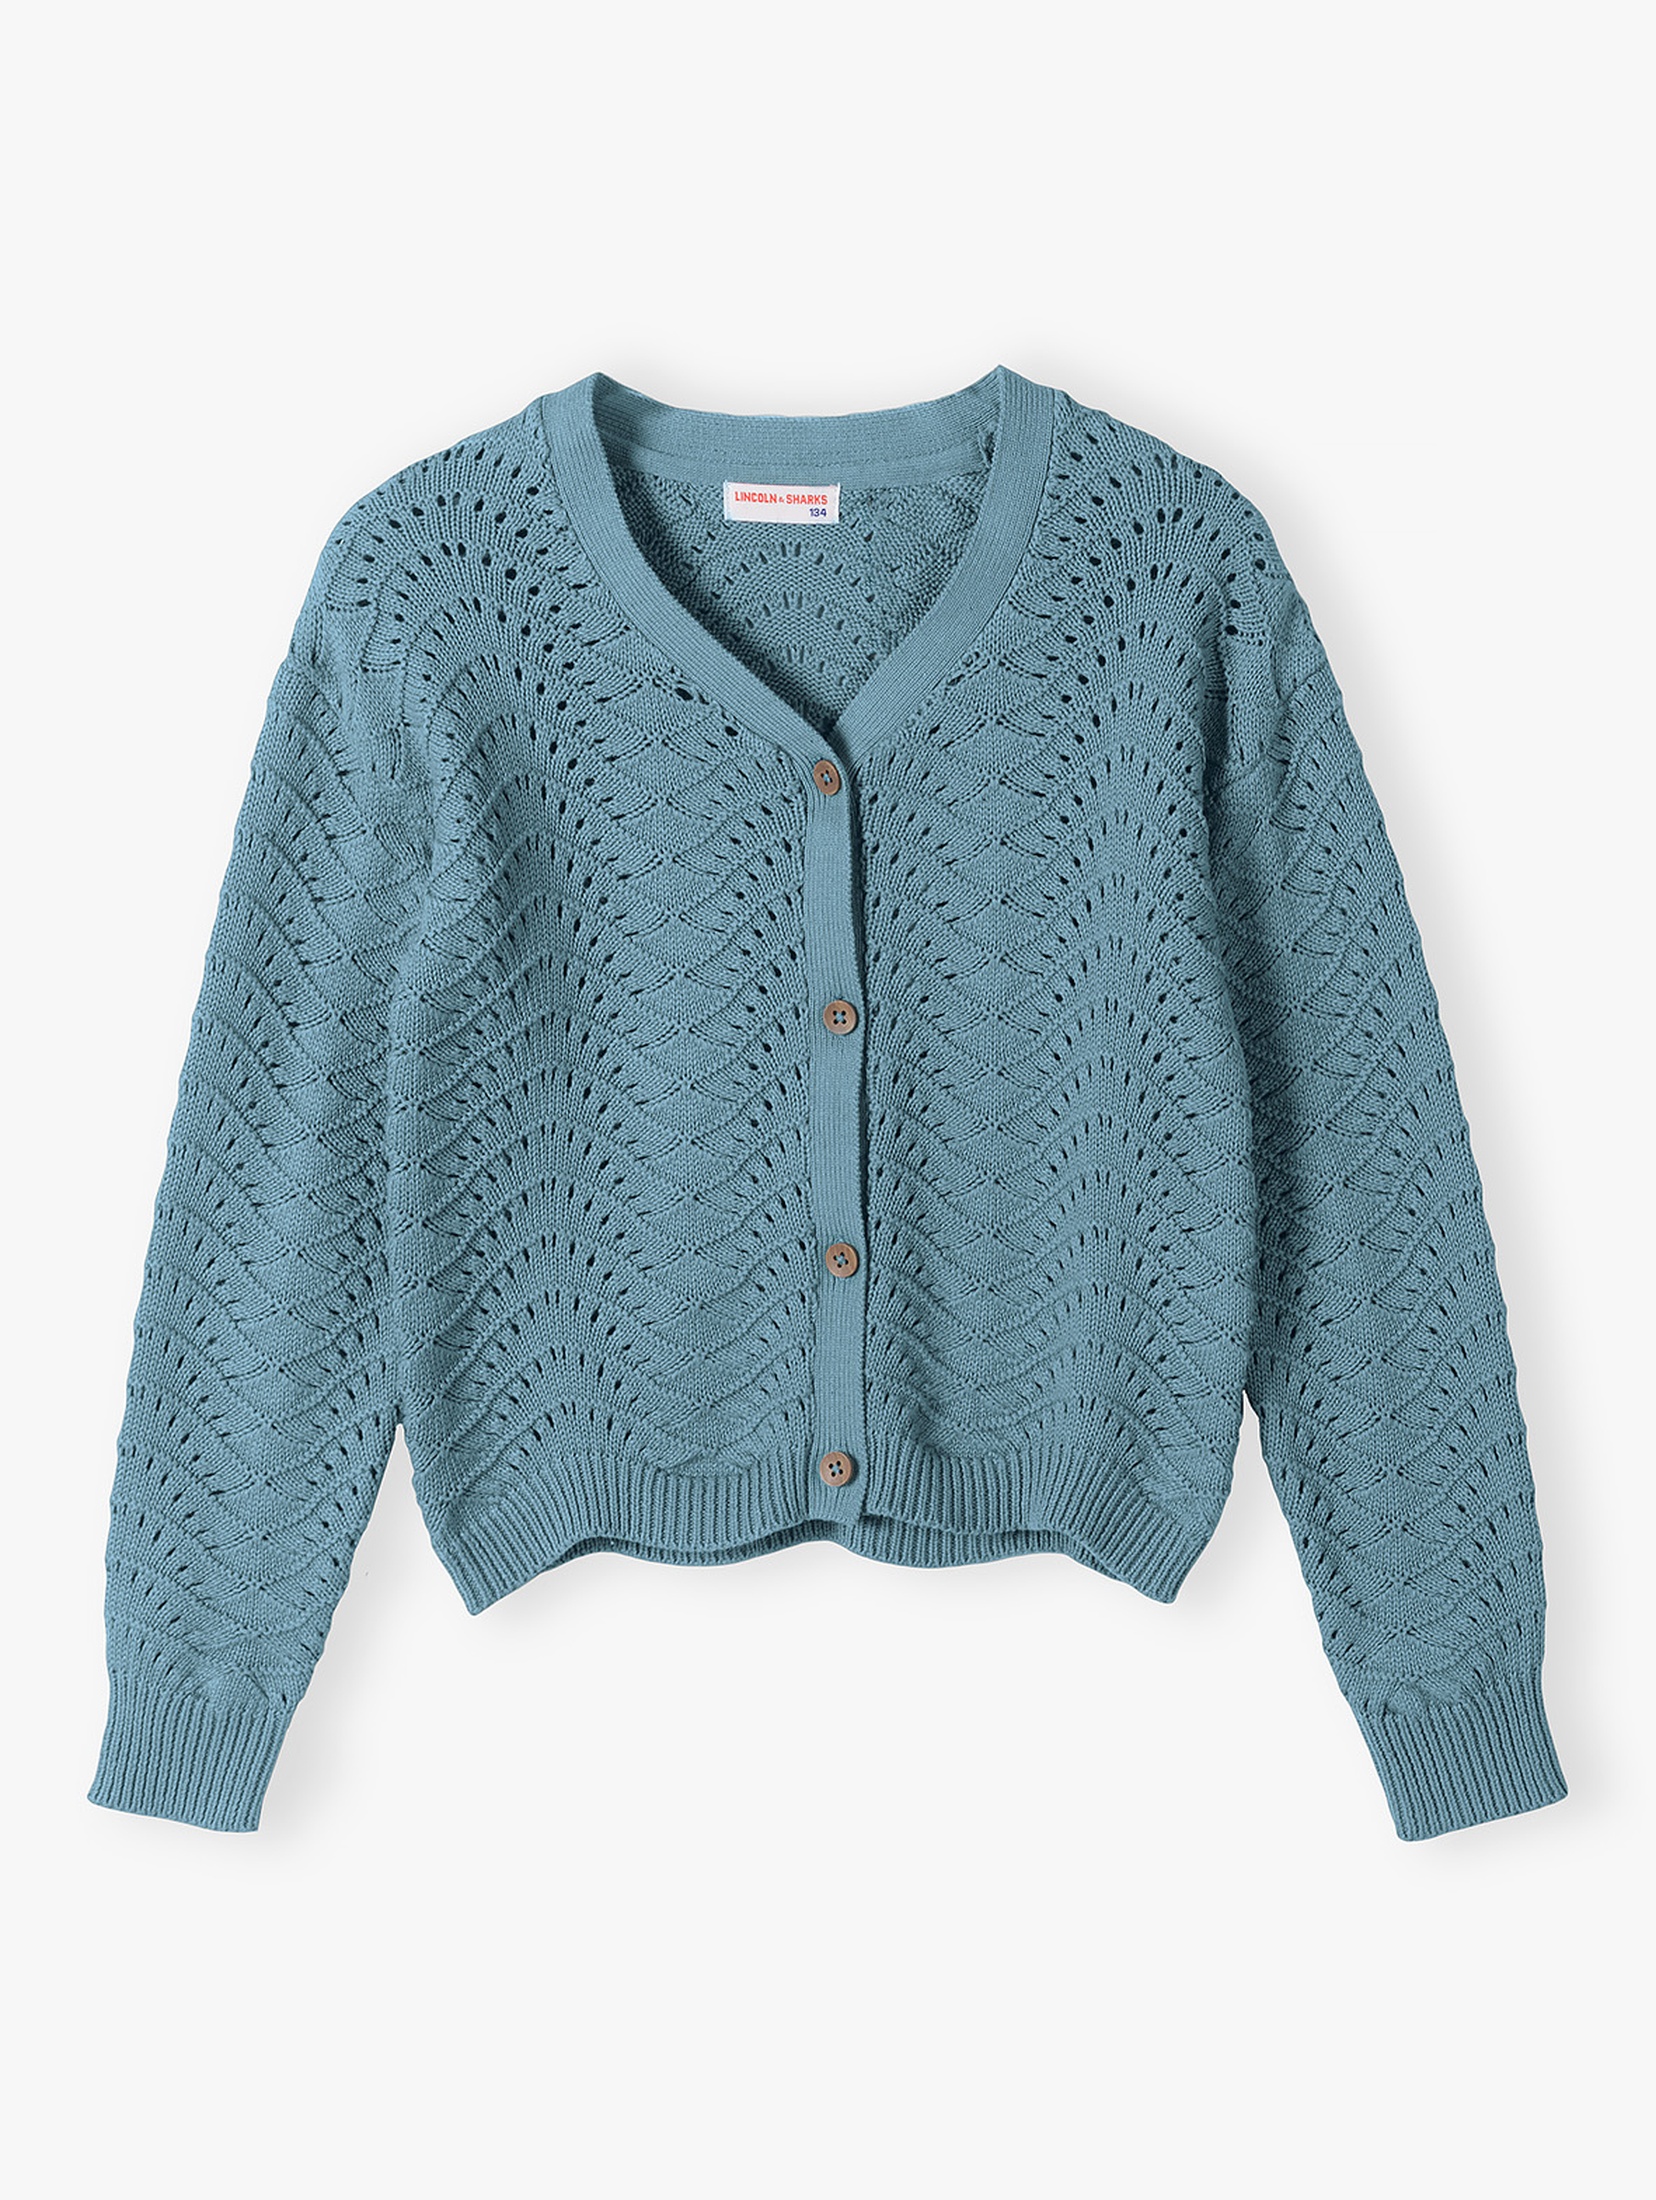 Sweter dziewczęcy z ażurowym wzorem - niebieski